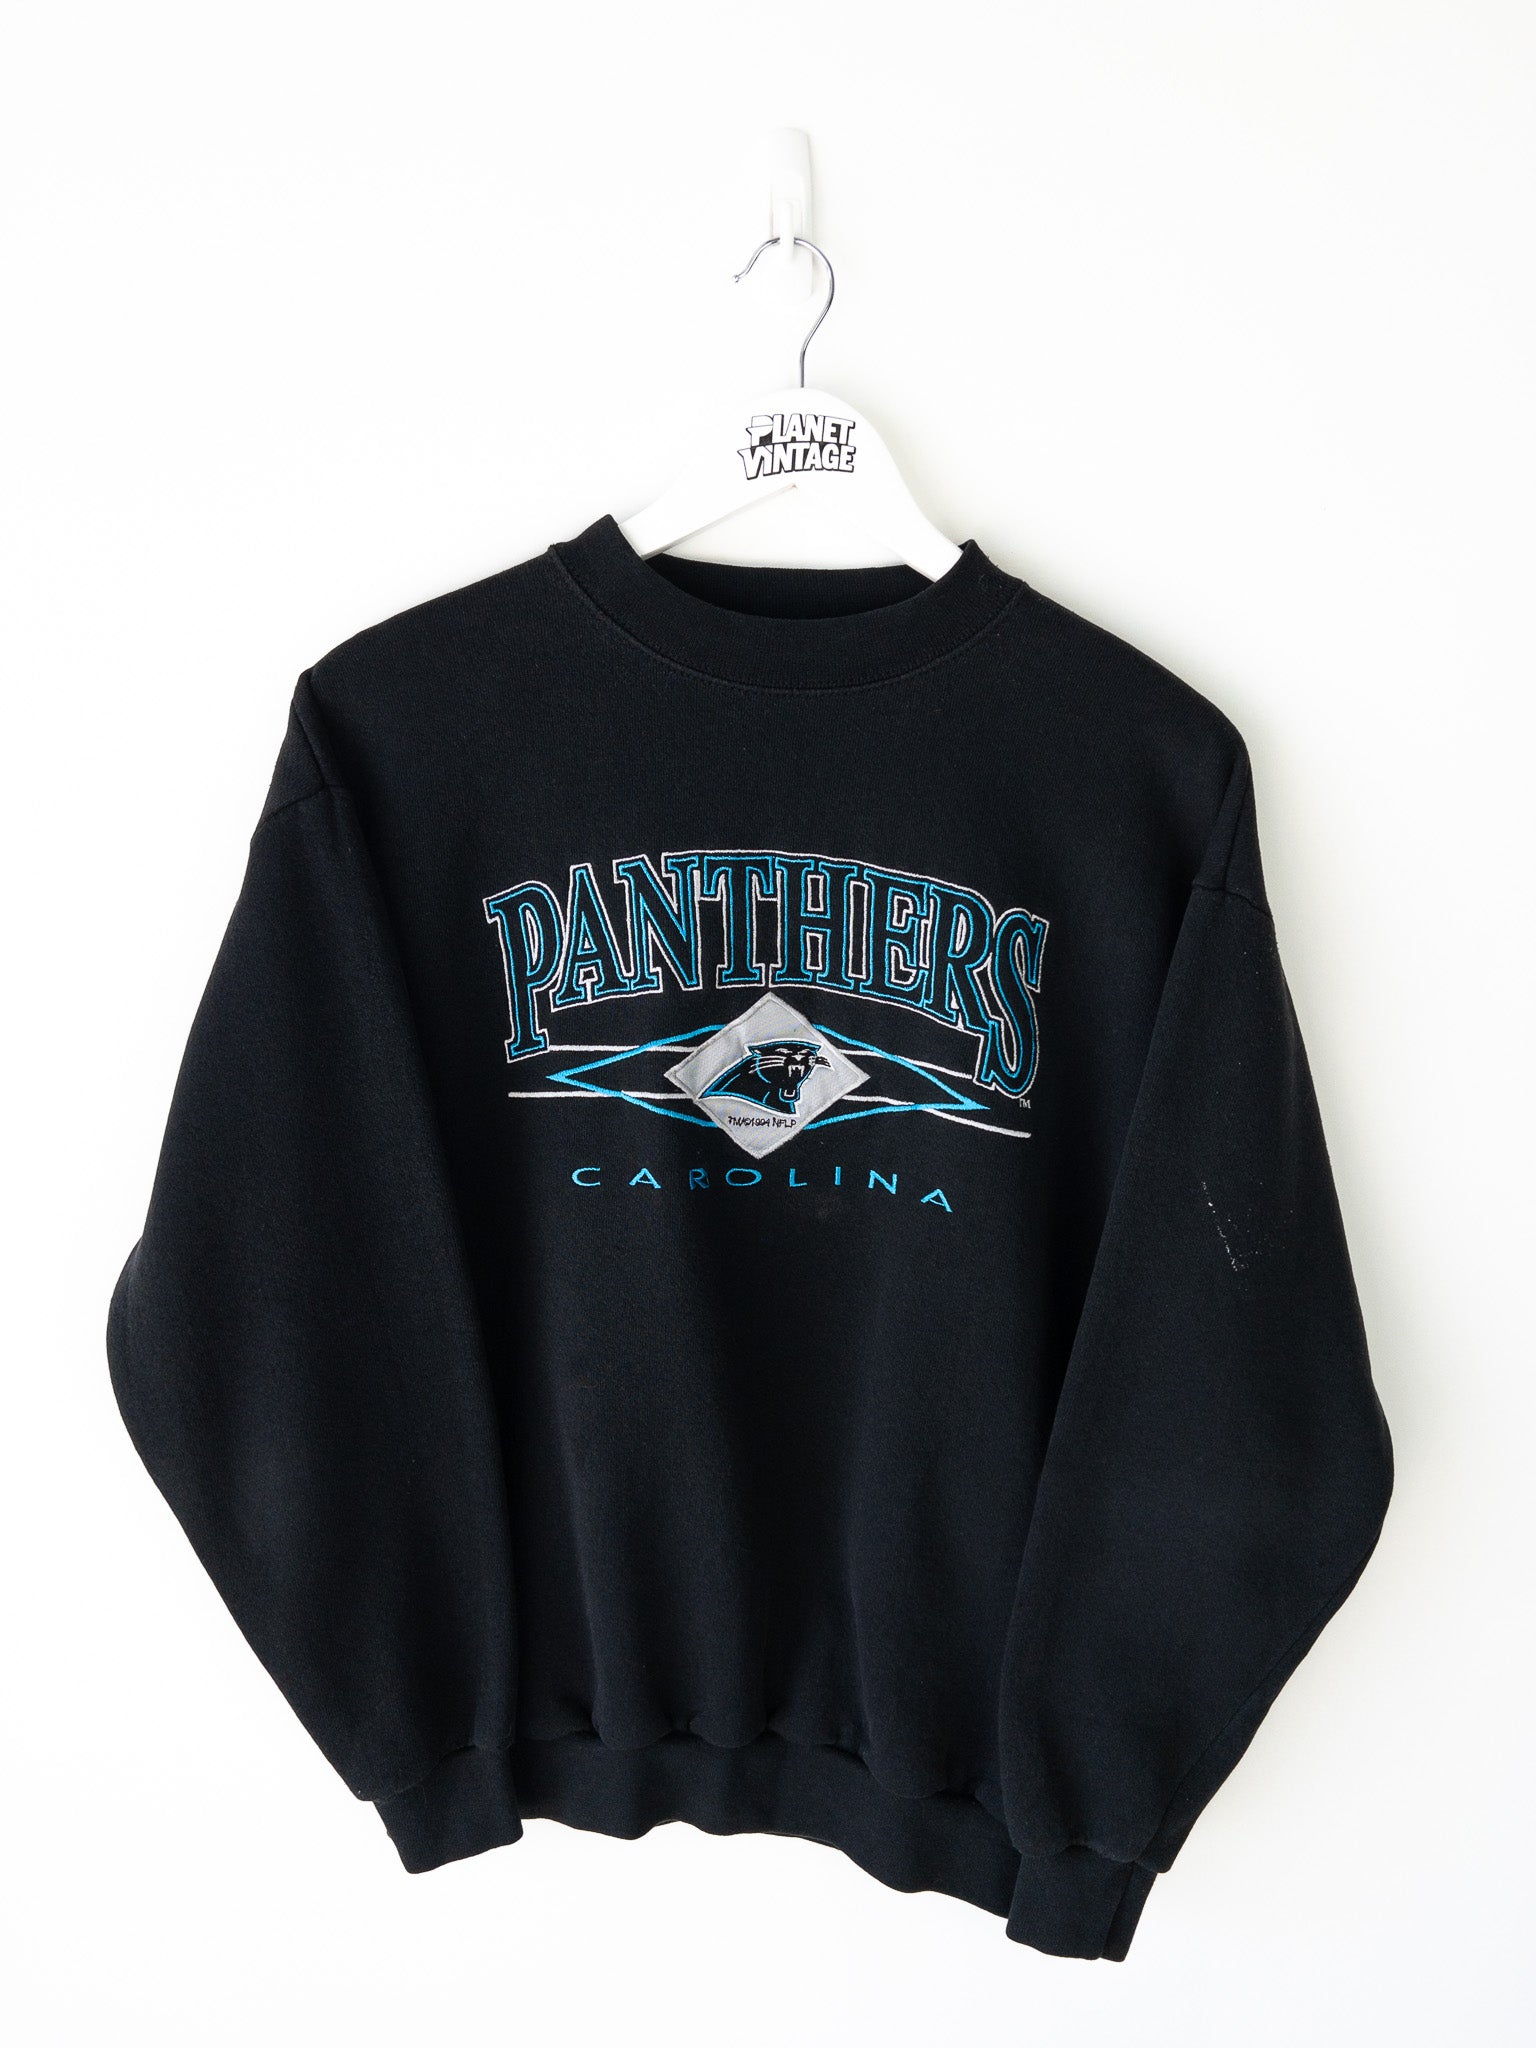 Vintage Carolina Panthers Sweatshirt (M)